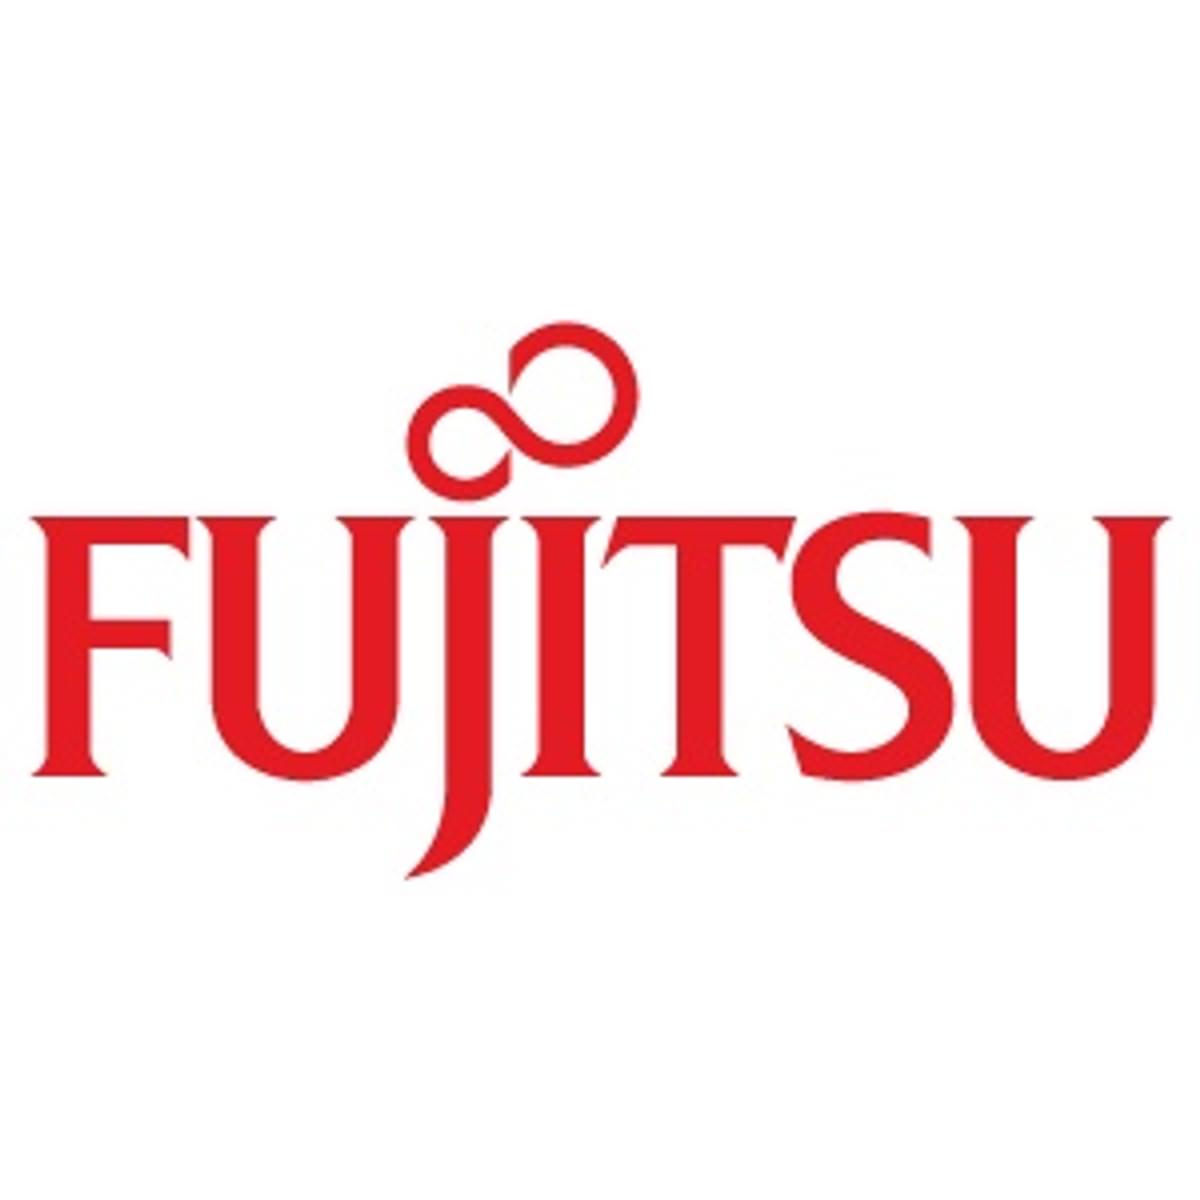 Fujitsu Forum Munich 2018 image